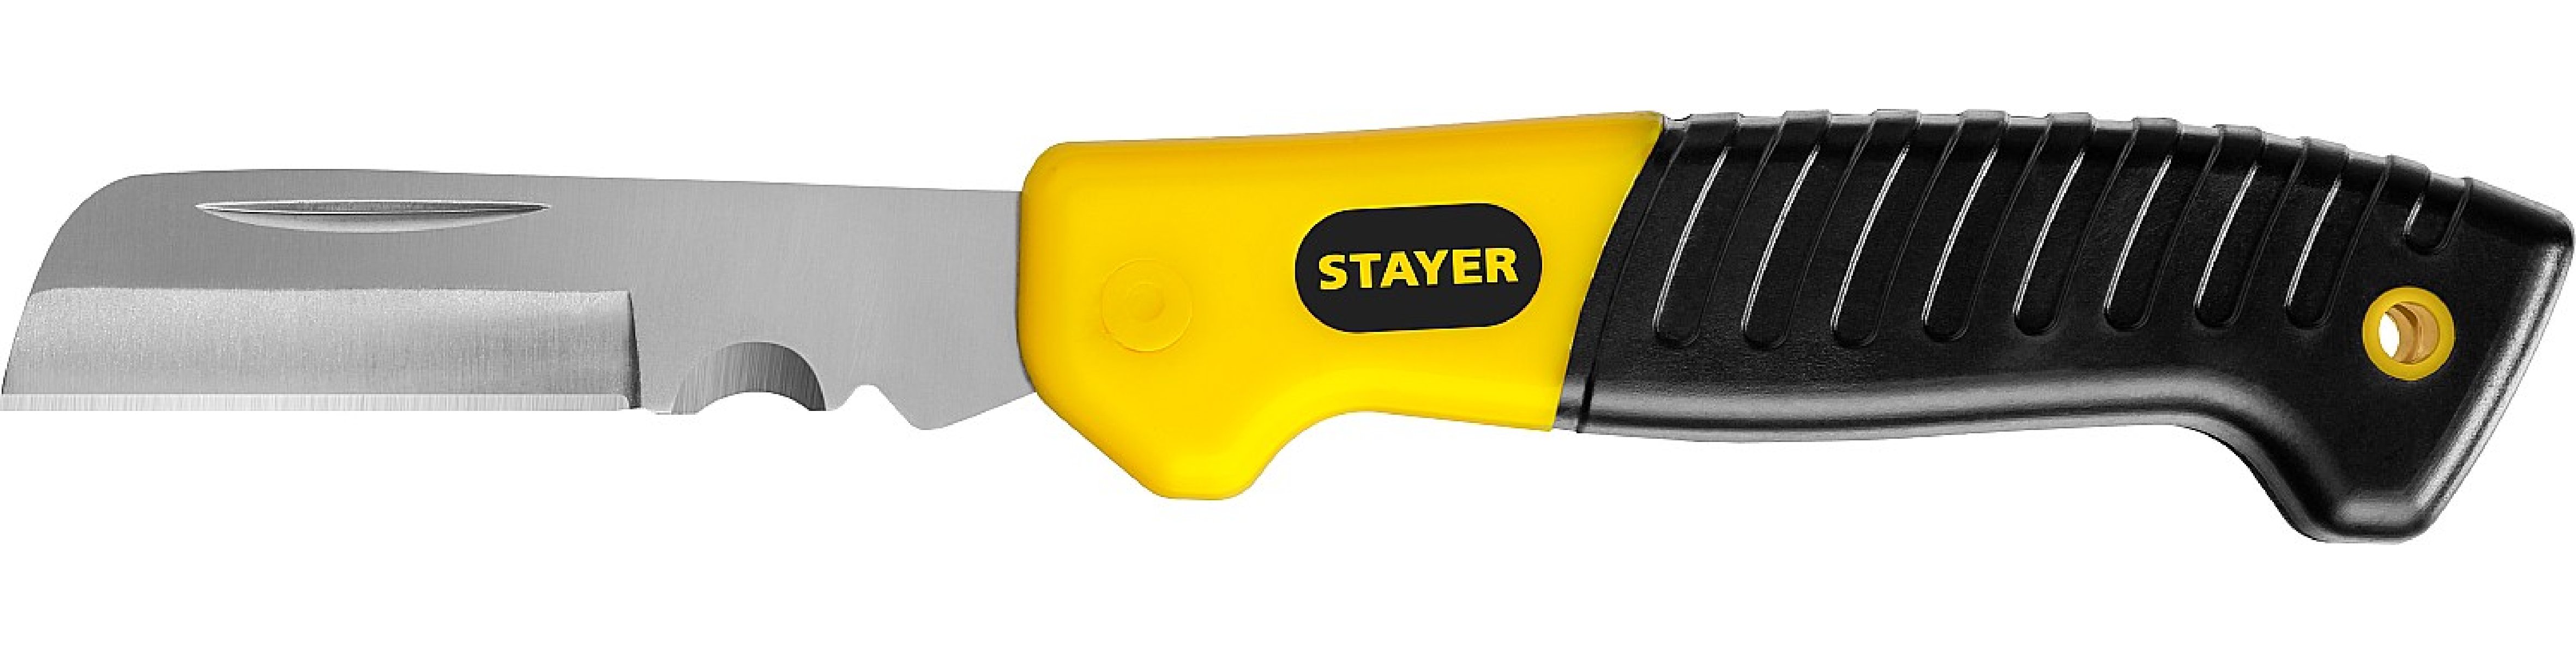      STAYER (45408)